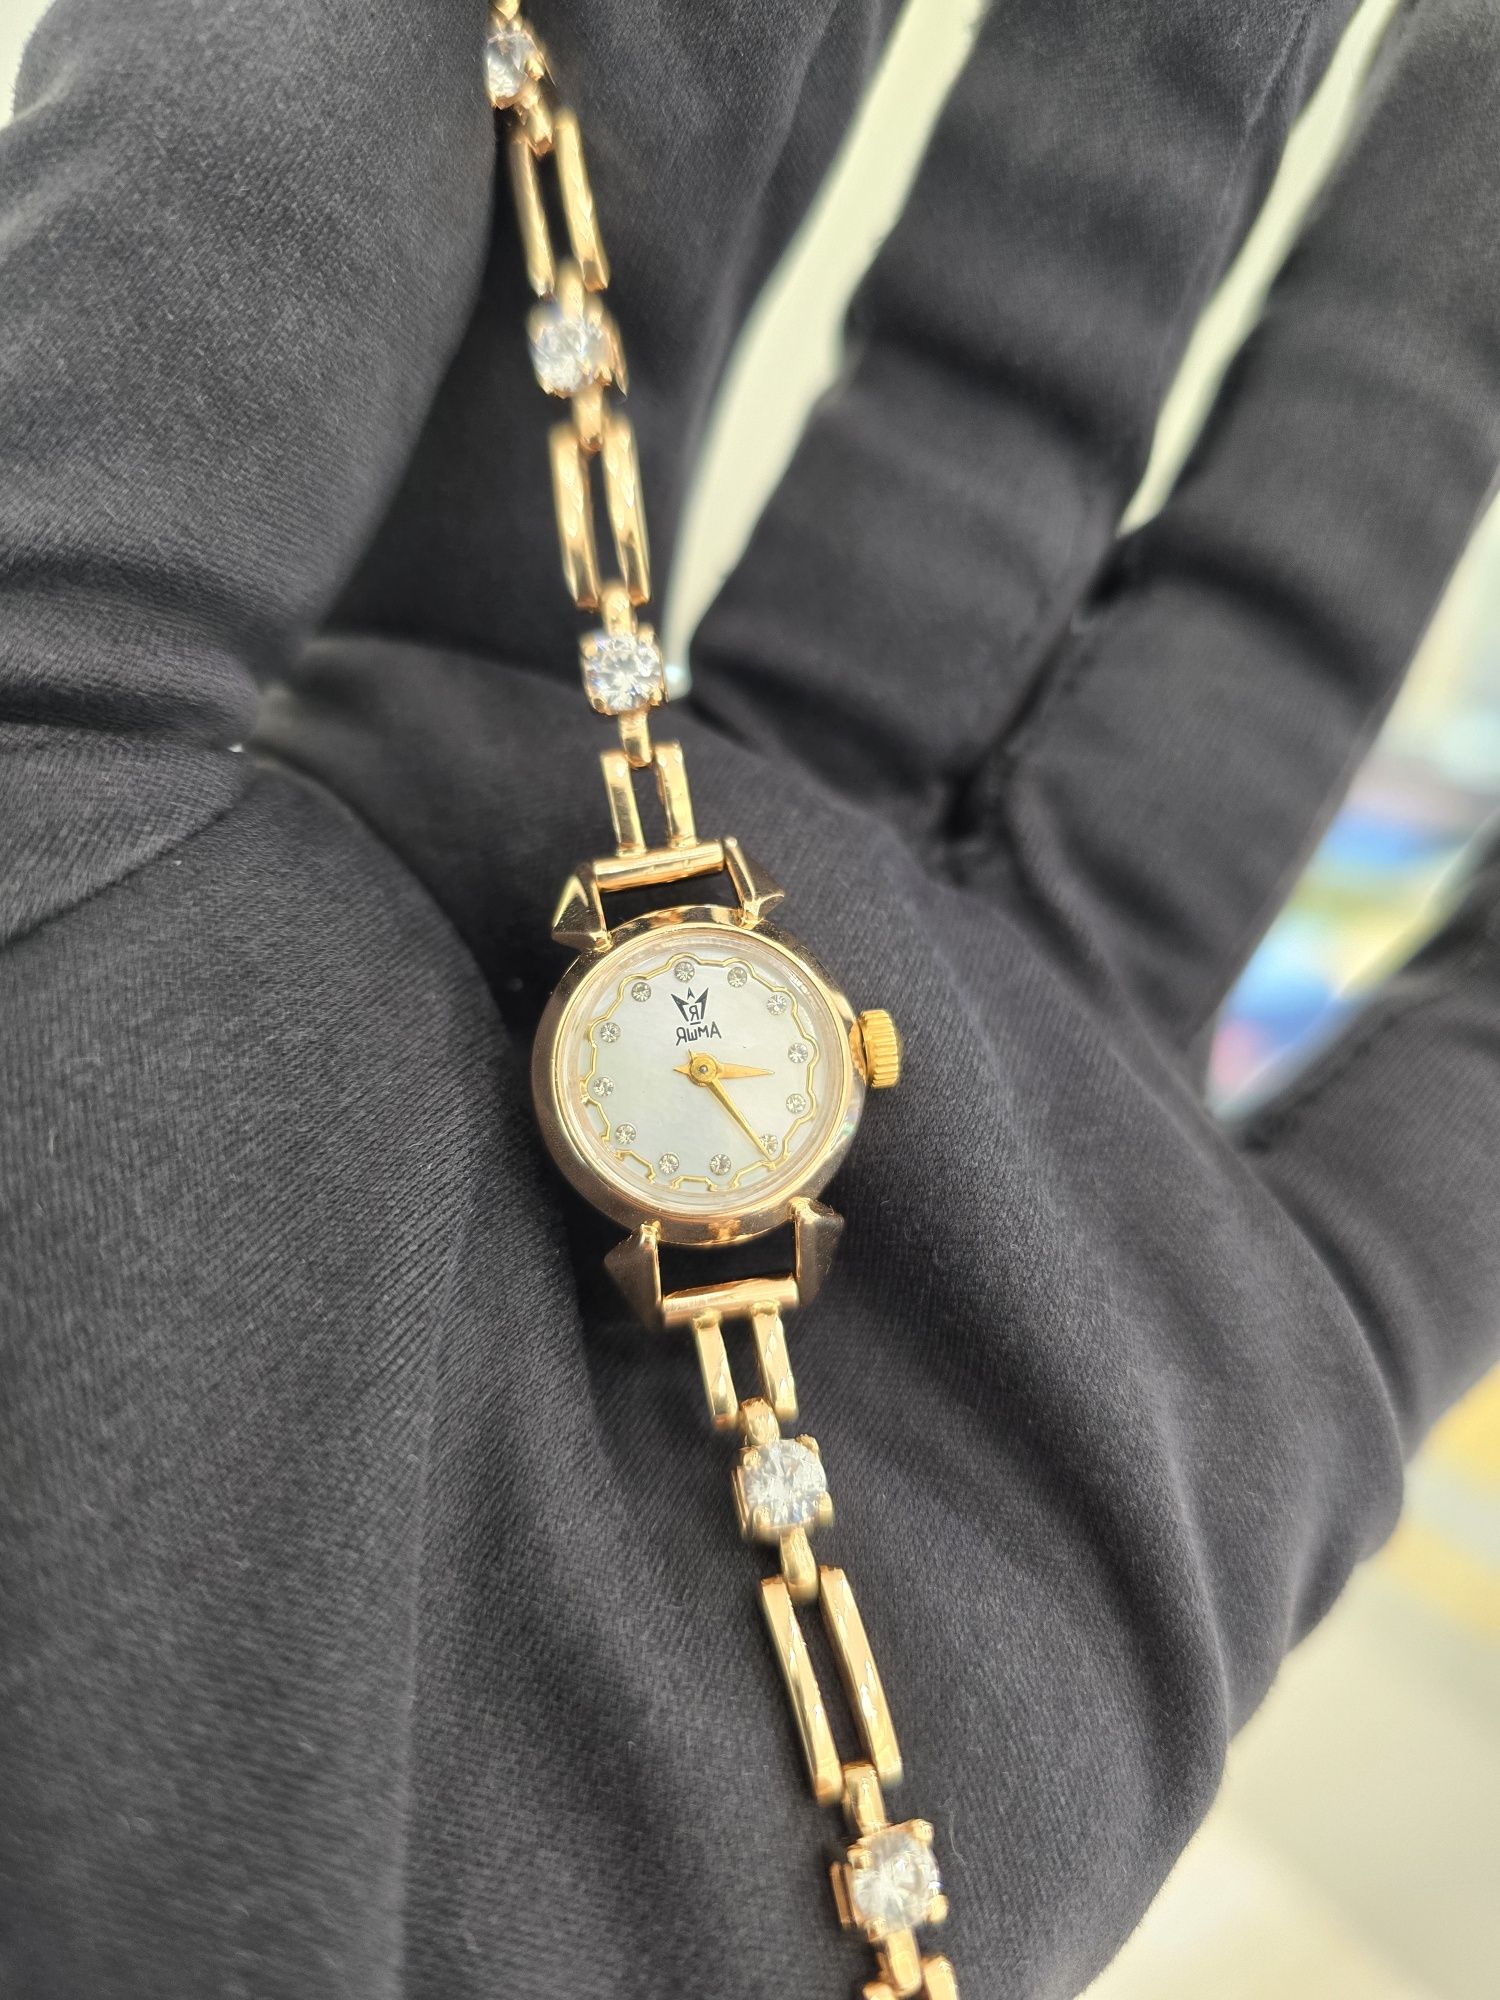 Продам золотые часы Яшма, Оригинал Москва.